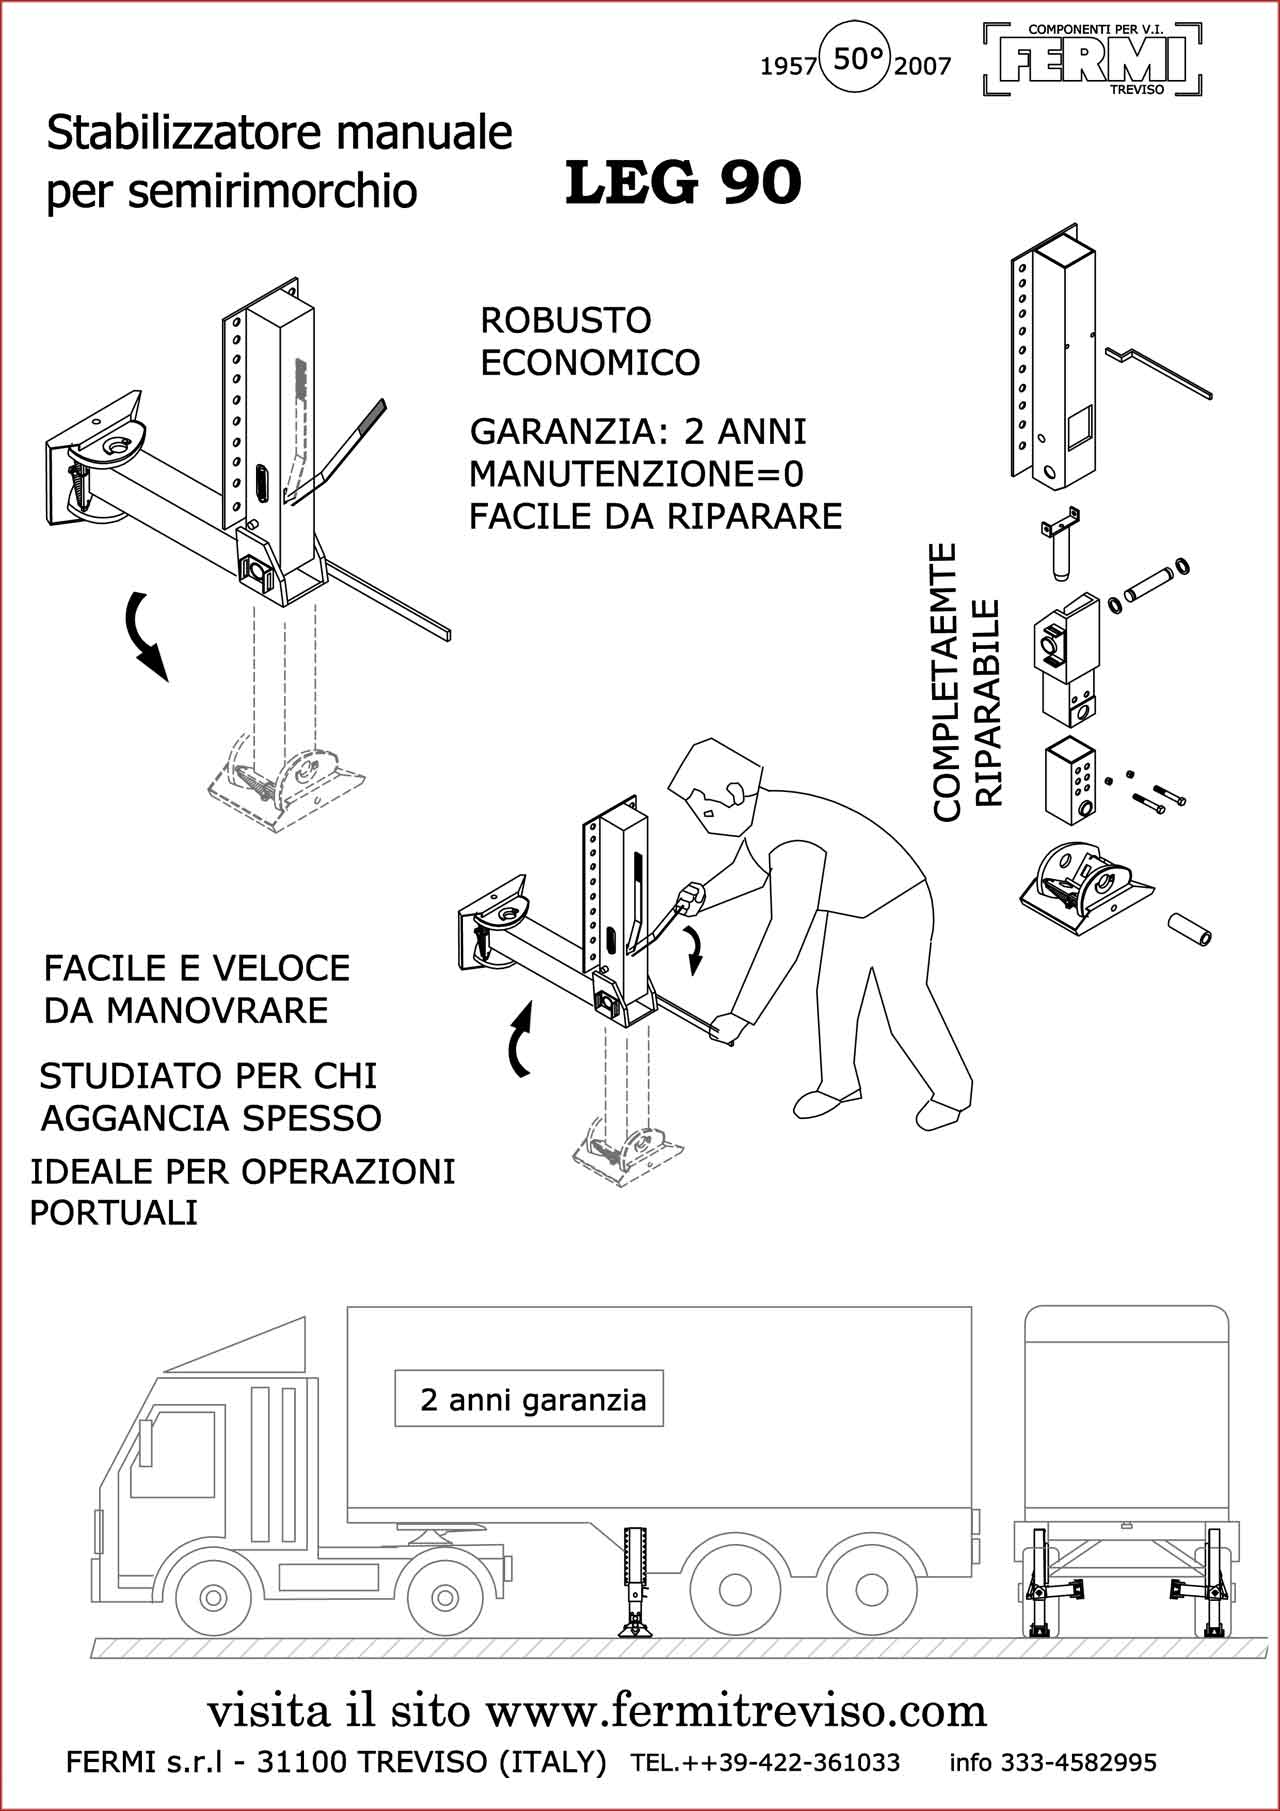 Stabilizzatore_Pneumatico_per_Semirimorchio-LEG_90-ita-Fermi-Treviso